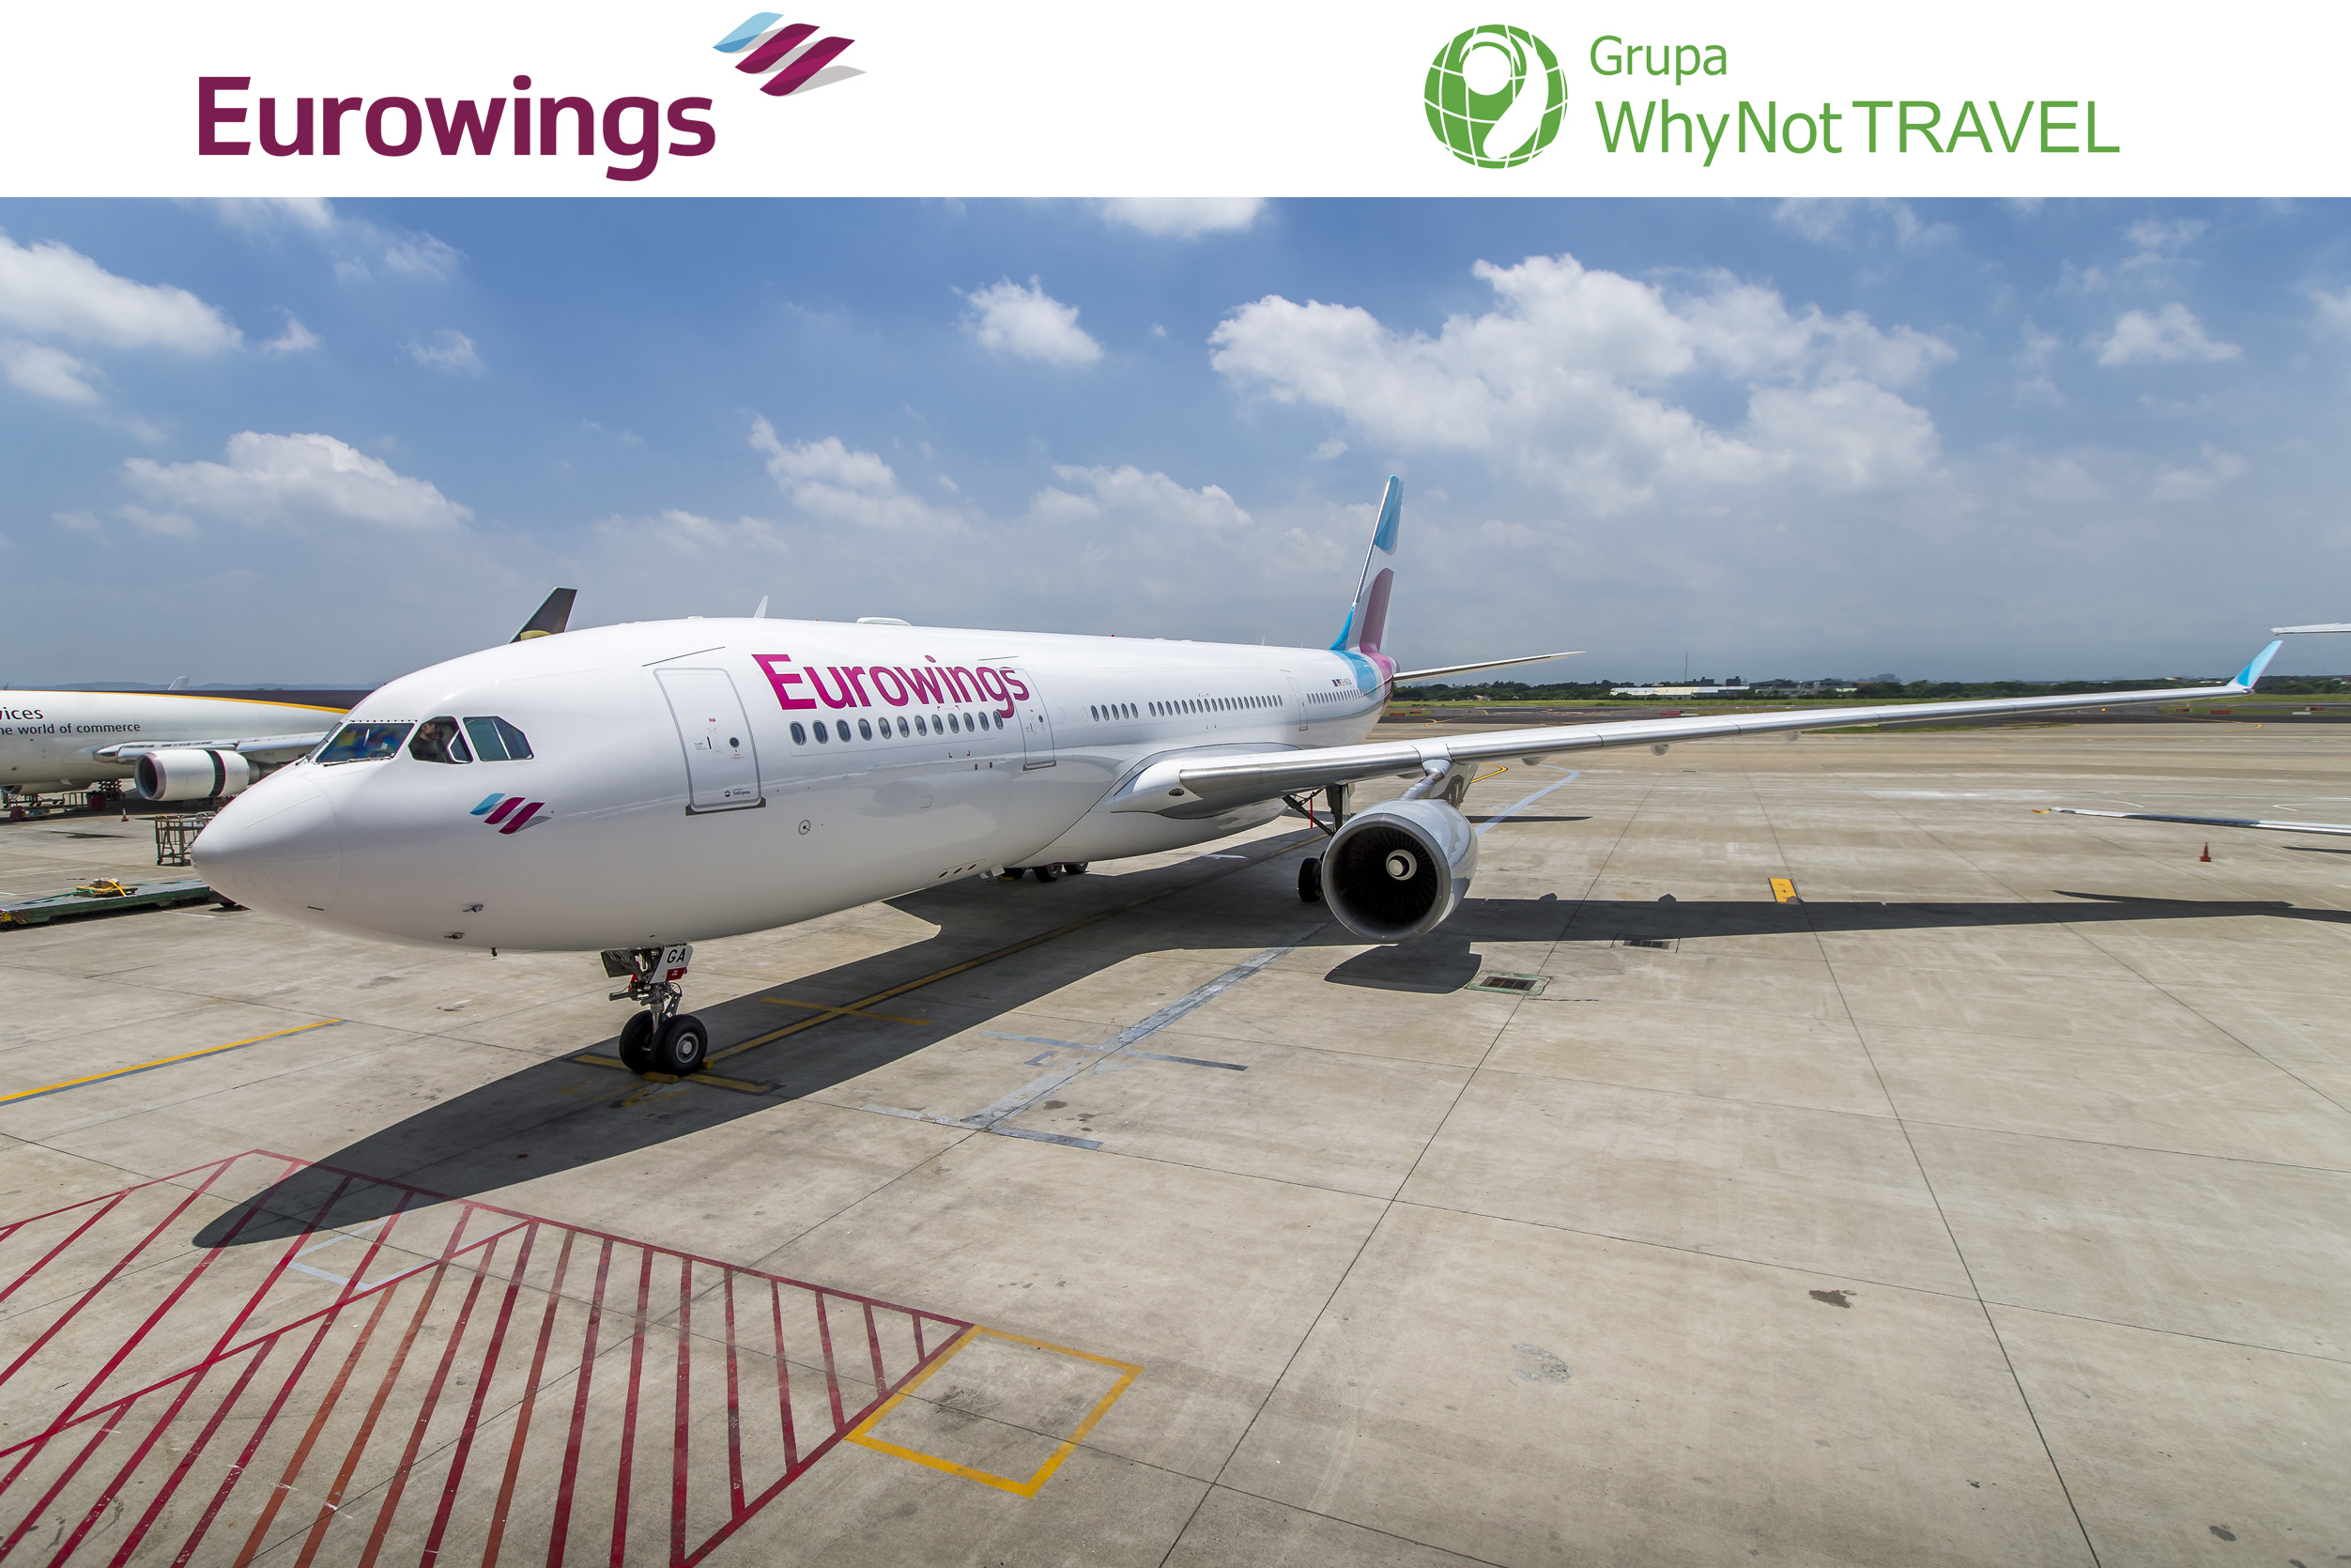 Wirtualne kojarzenie linii: Eurowings rozpoczyna dystrybucję biletów innych linii lotniczych